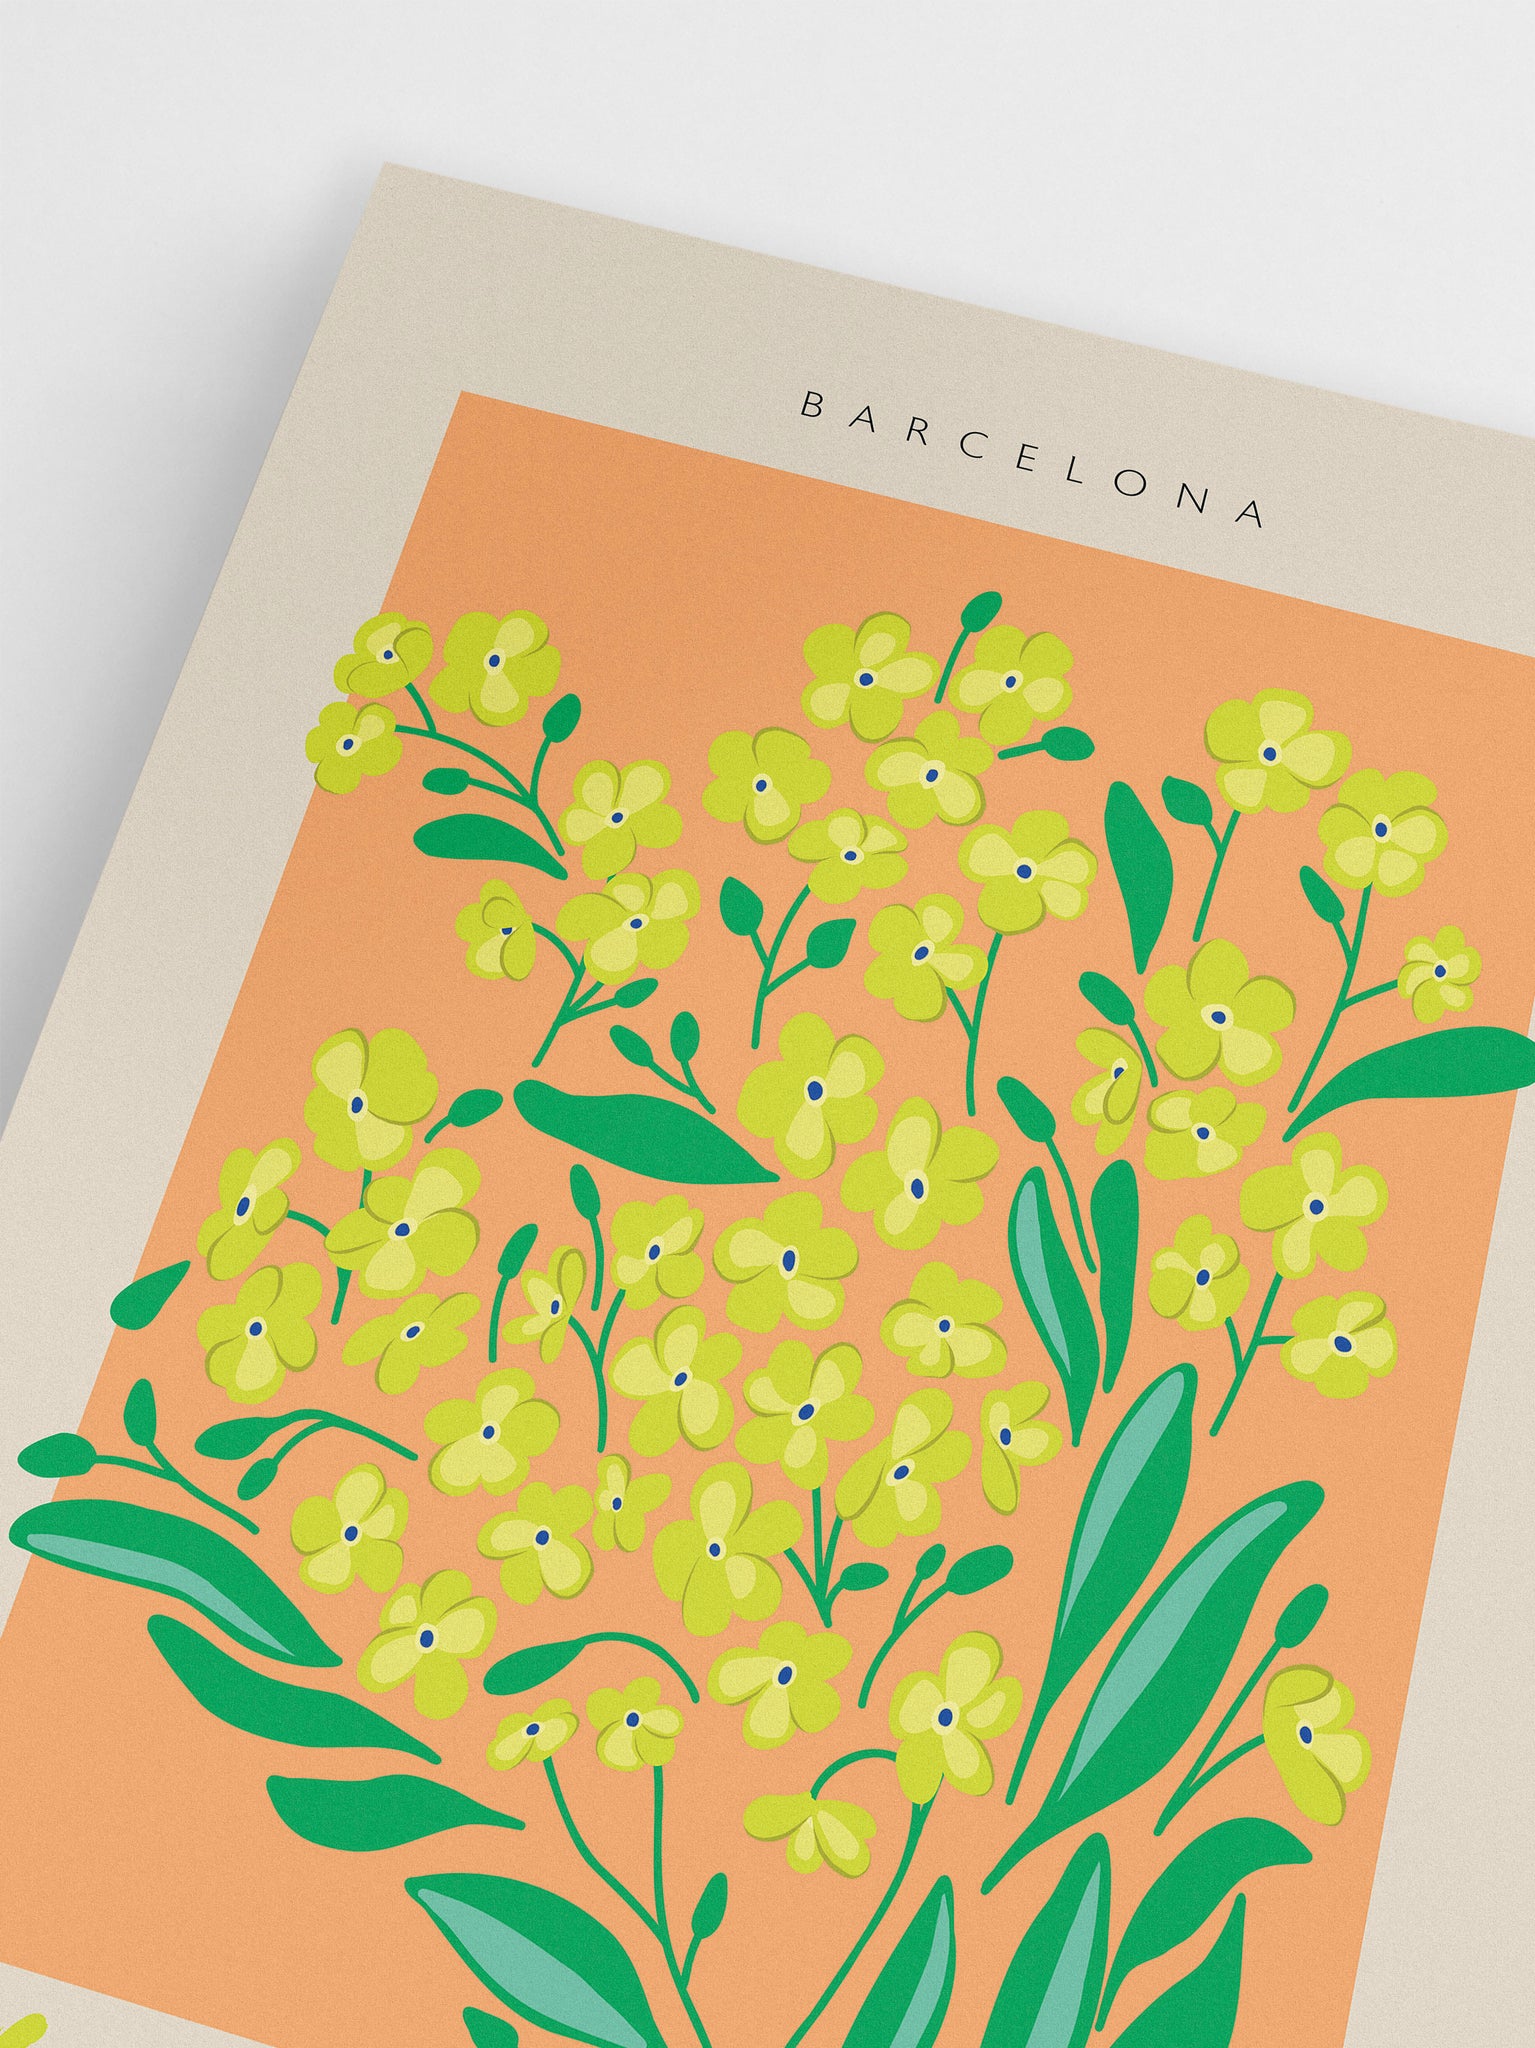 Barcelona Flower Marker Poster